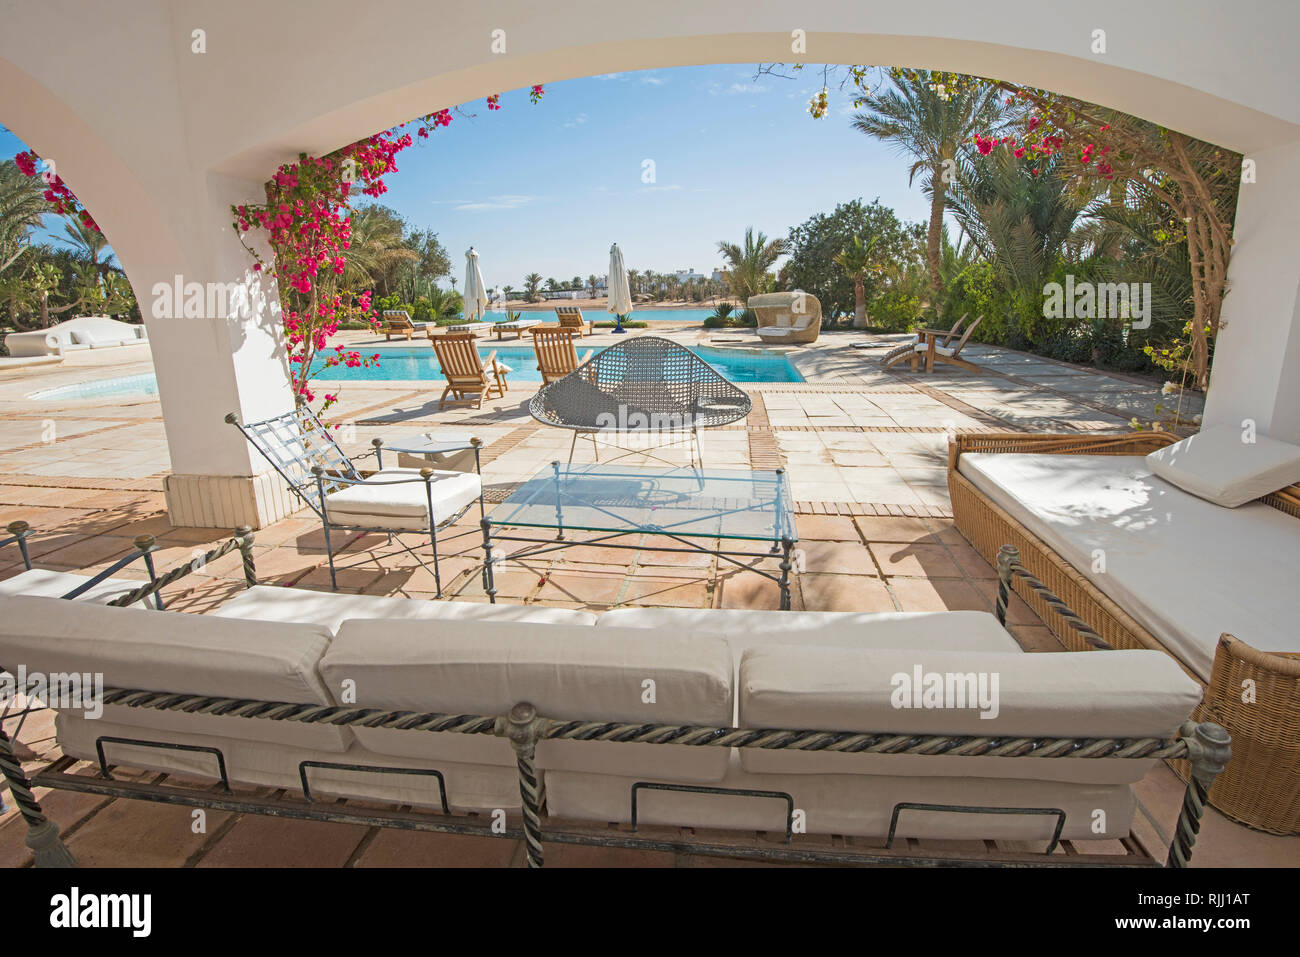 Villa di lusso show home in estate tropicale resort per vacanze con piscina e sdraio mobili da esterno Foto Stock